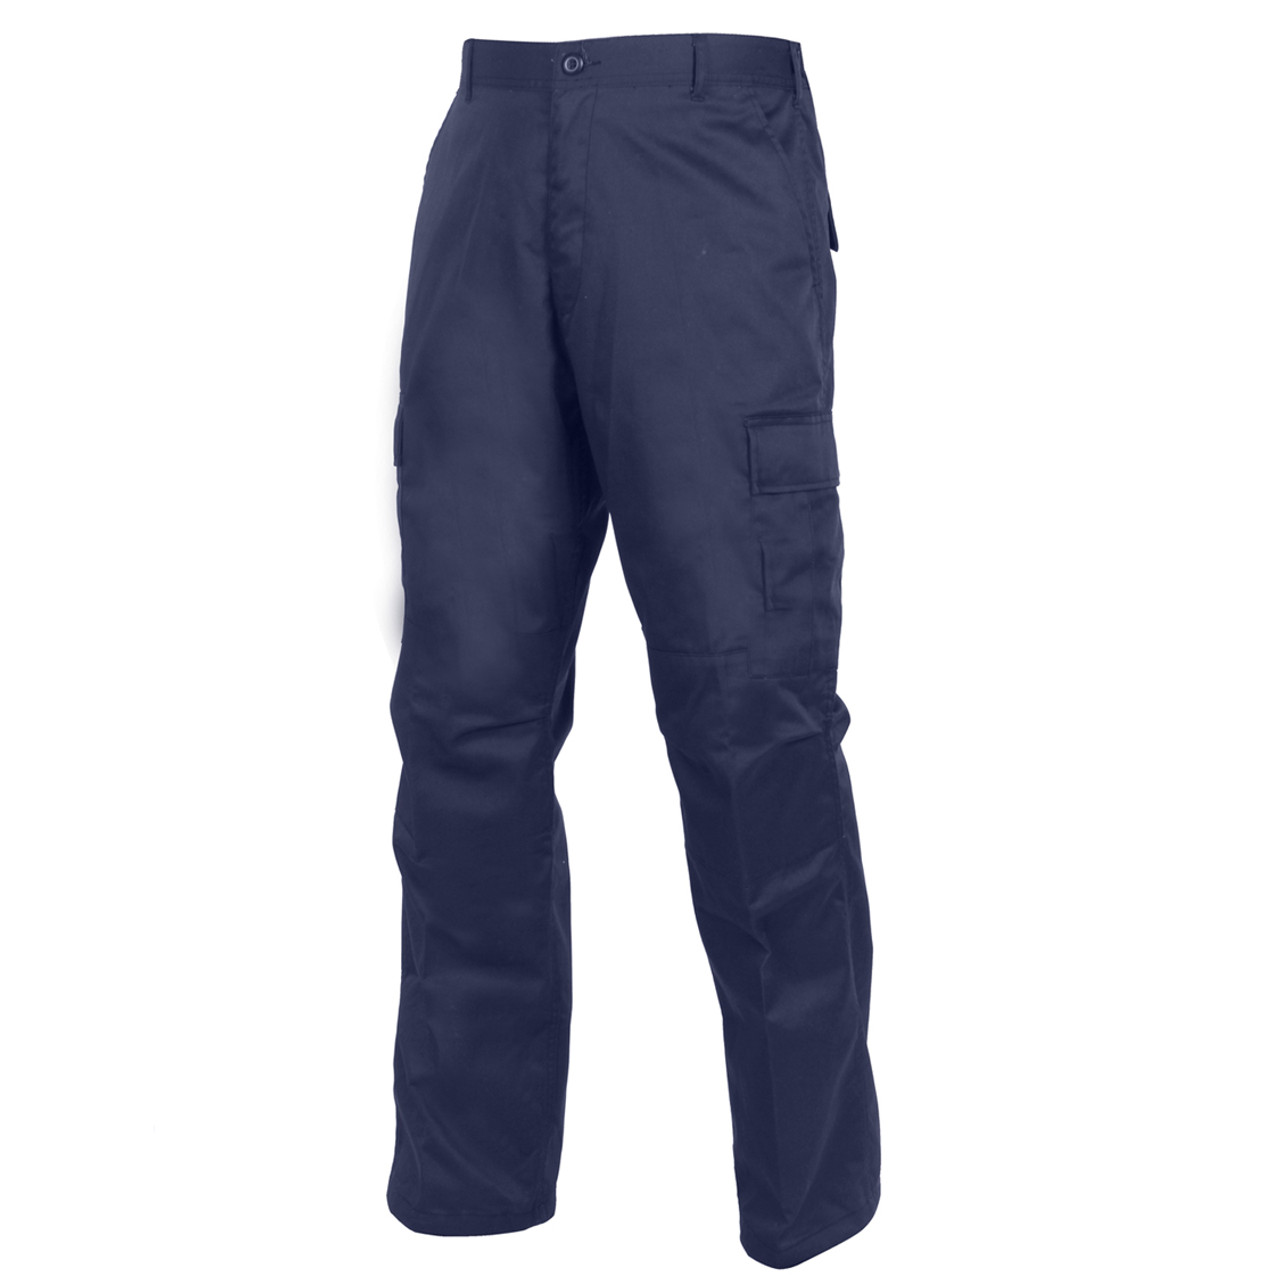 Relaxed Fit Zipper Navy Blue BDU Fatigue Pants